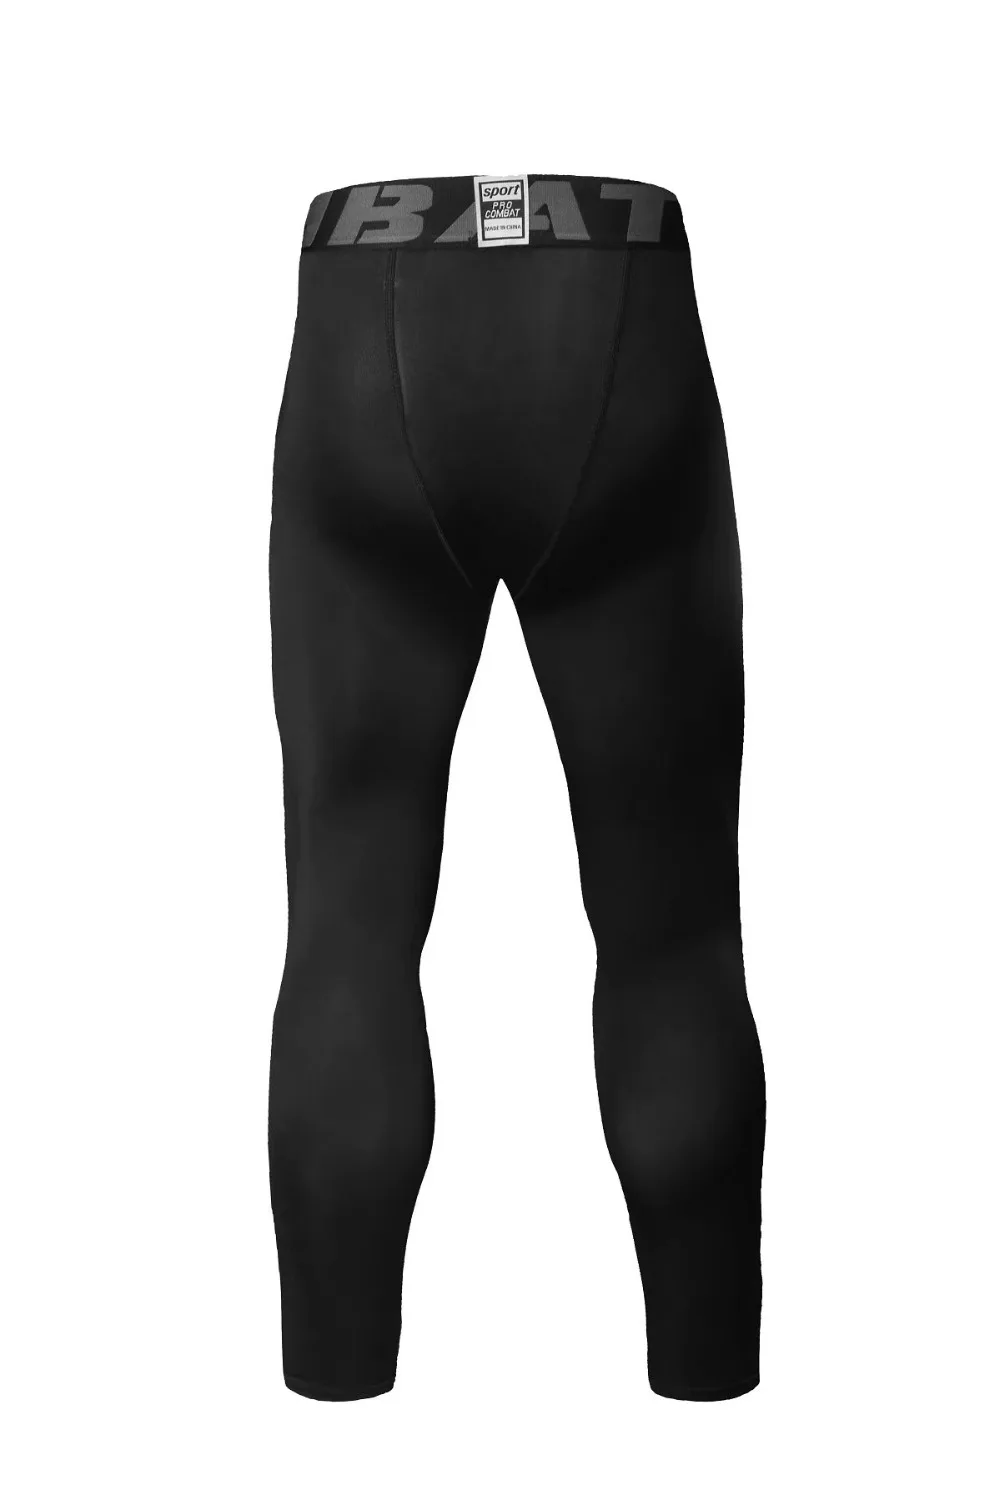 Сжатая одежда, мужской костюм для бега, тренировочная рубашка, леггинсы, мужской спортивный костюм, черный, 2 предмета, спортивный костюм, мужской Рашгард для MMA kit